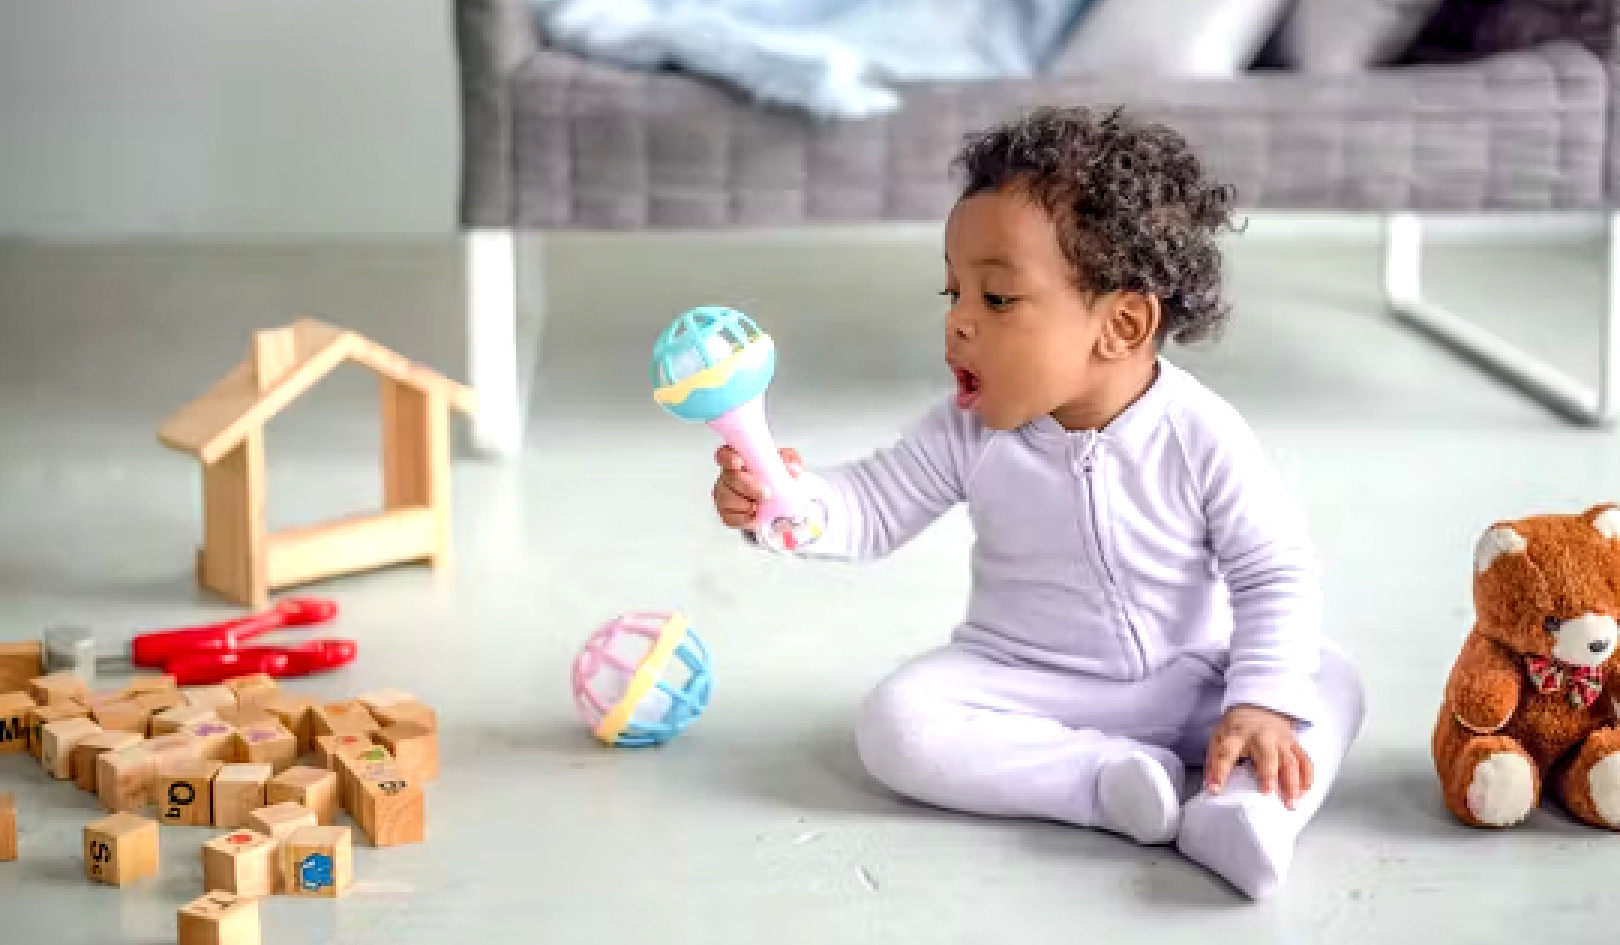 Chọn đồ chơi phù hợp cho bé: Lời khuyên về niềm vui và sự phát triển được khoa học chứng minh